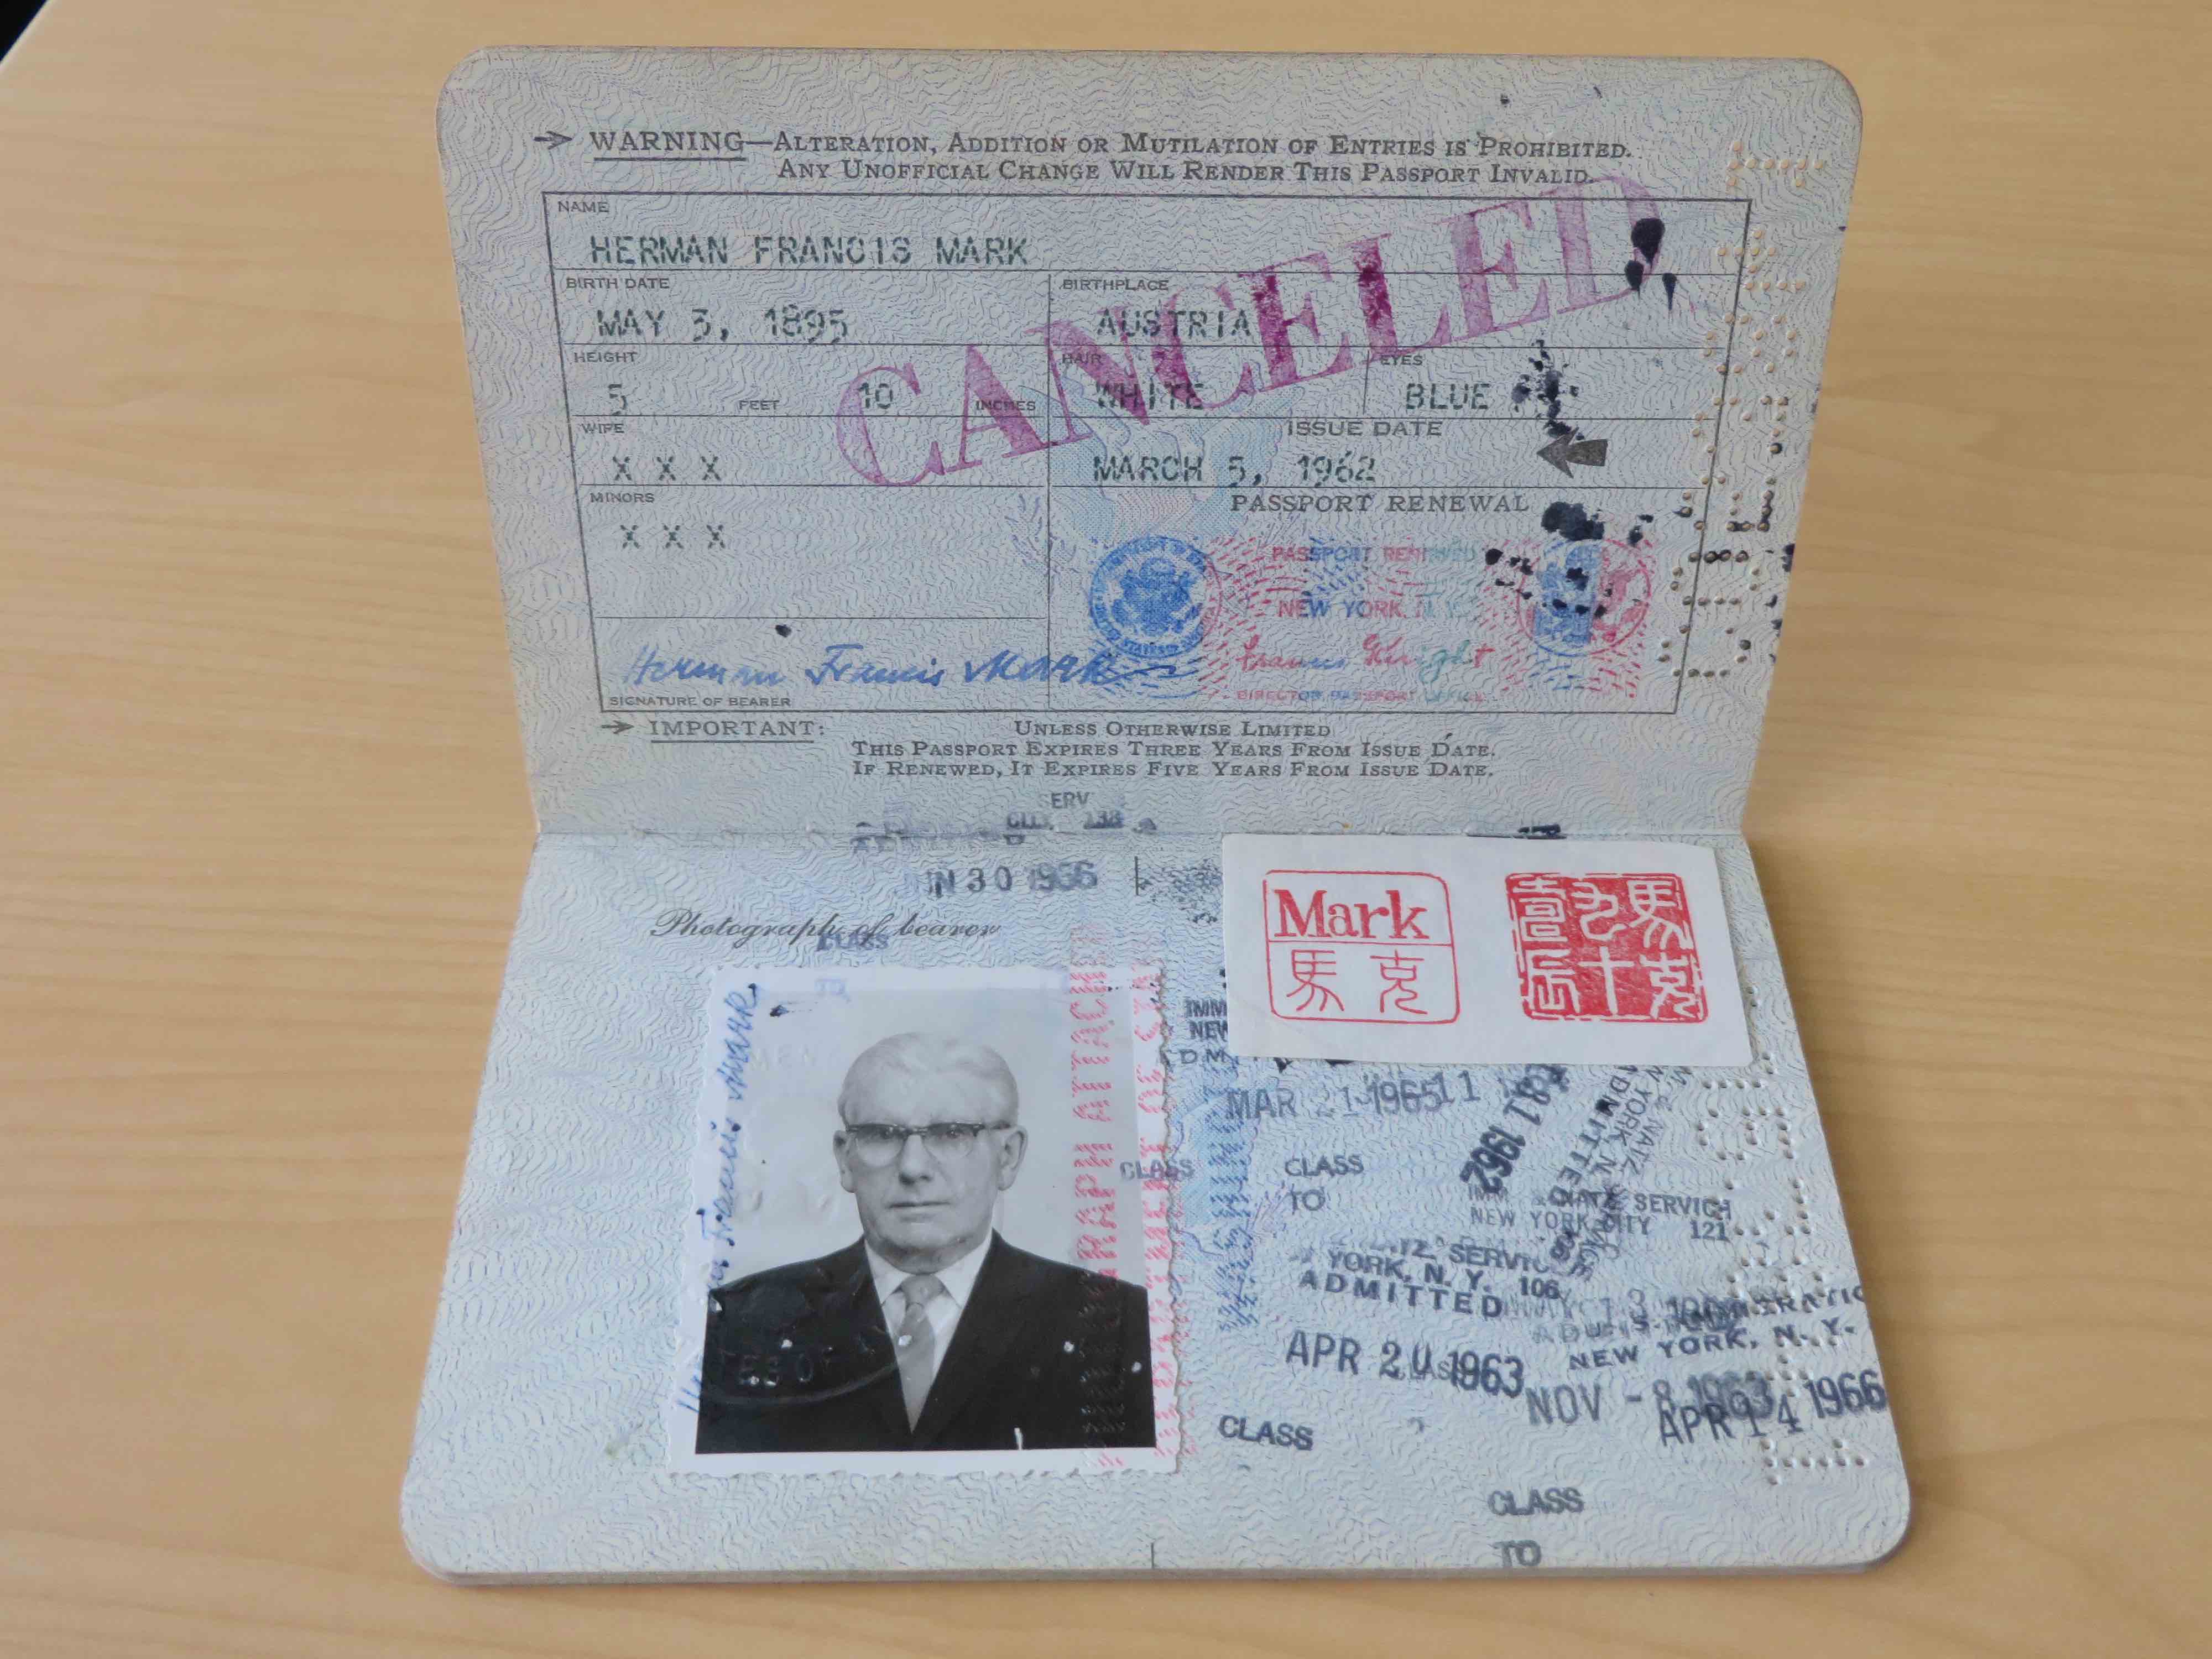 Herman Mark's passport